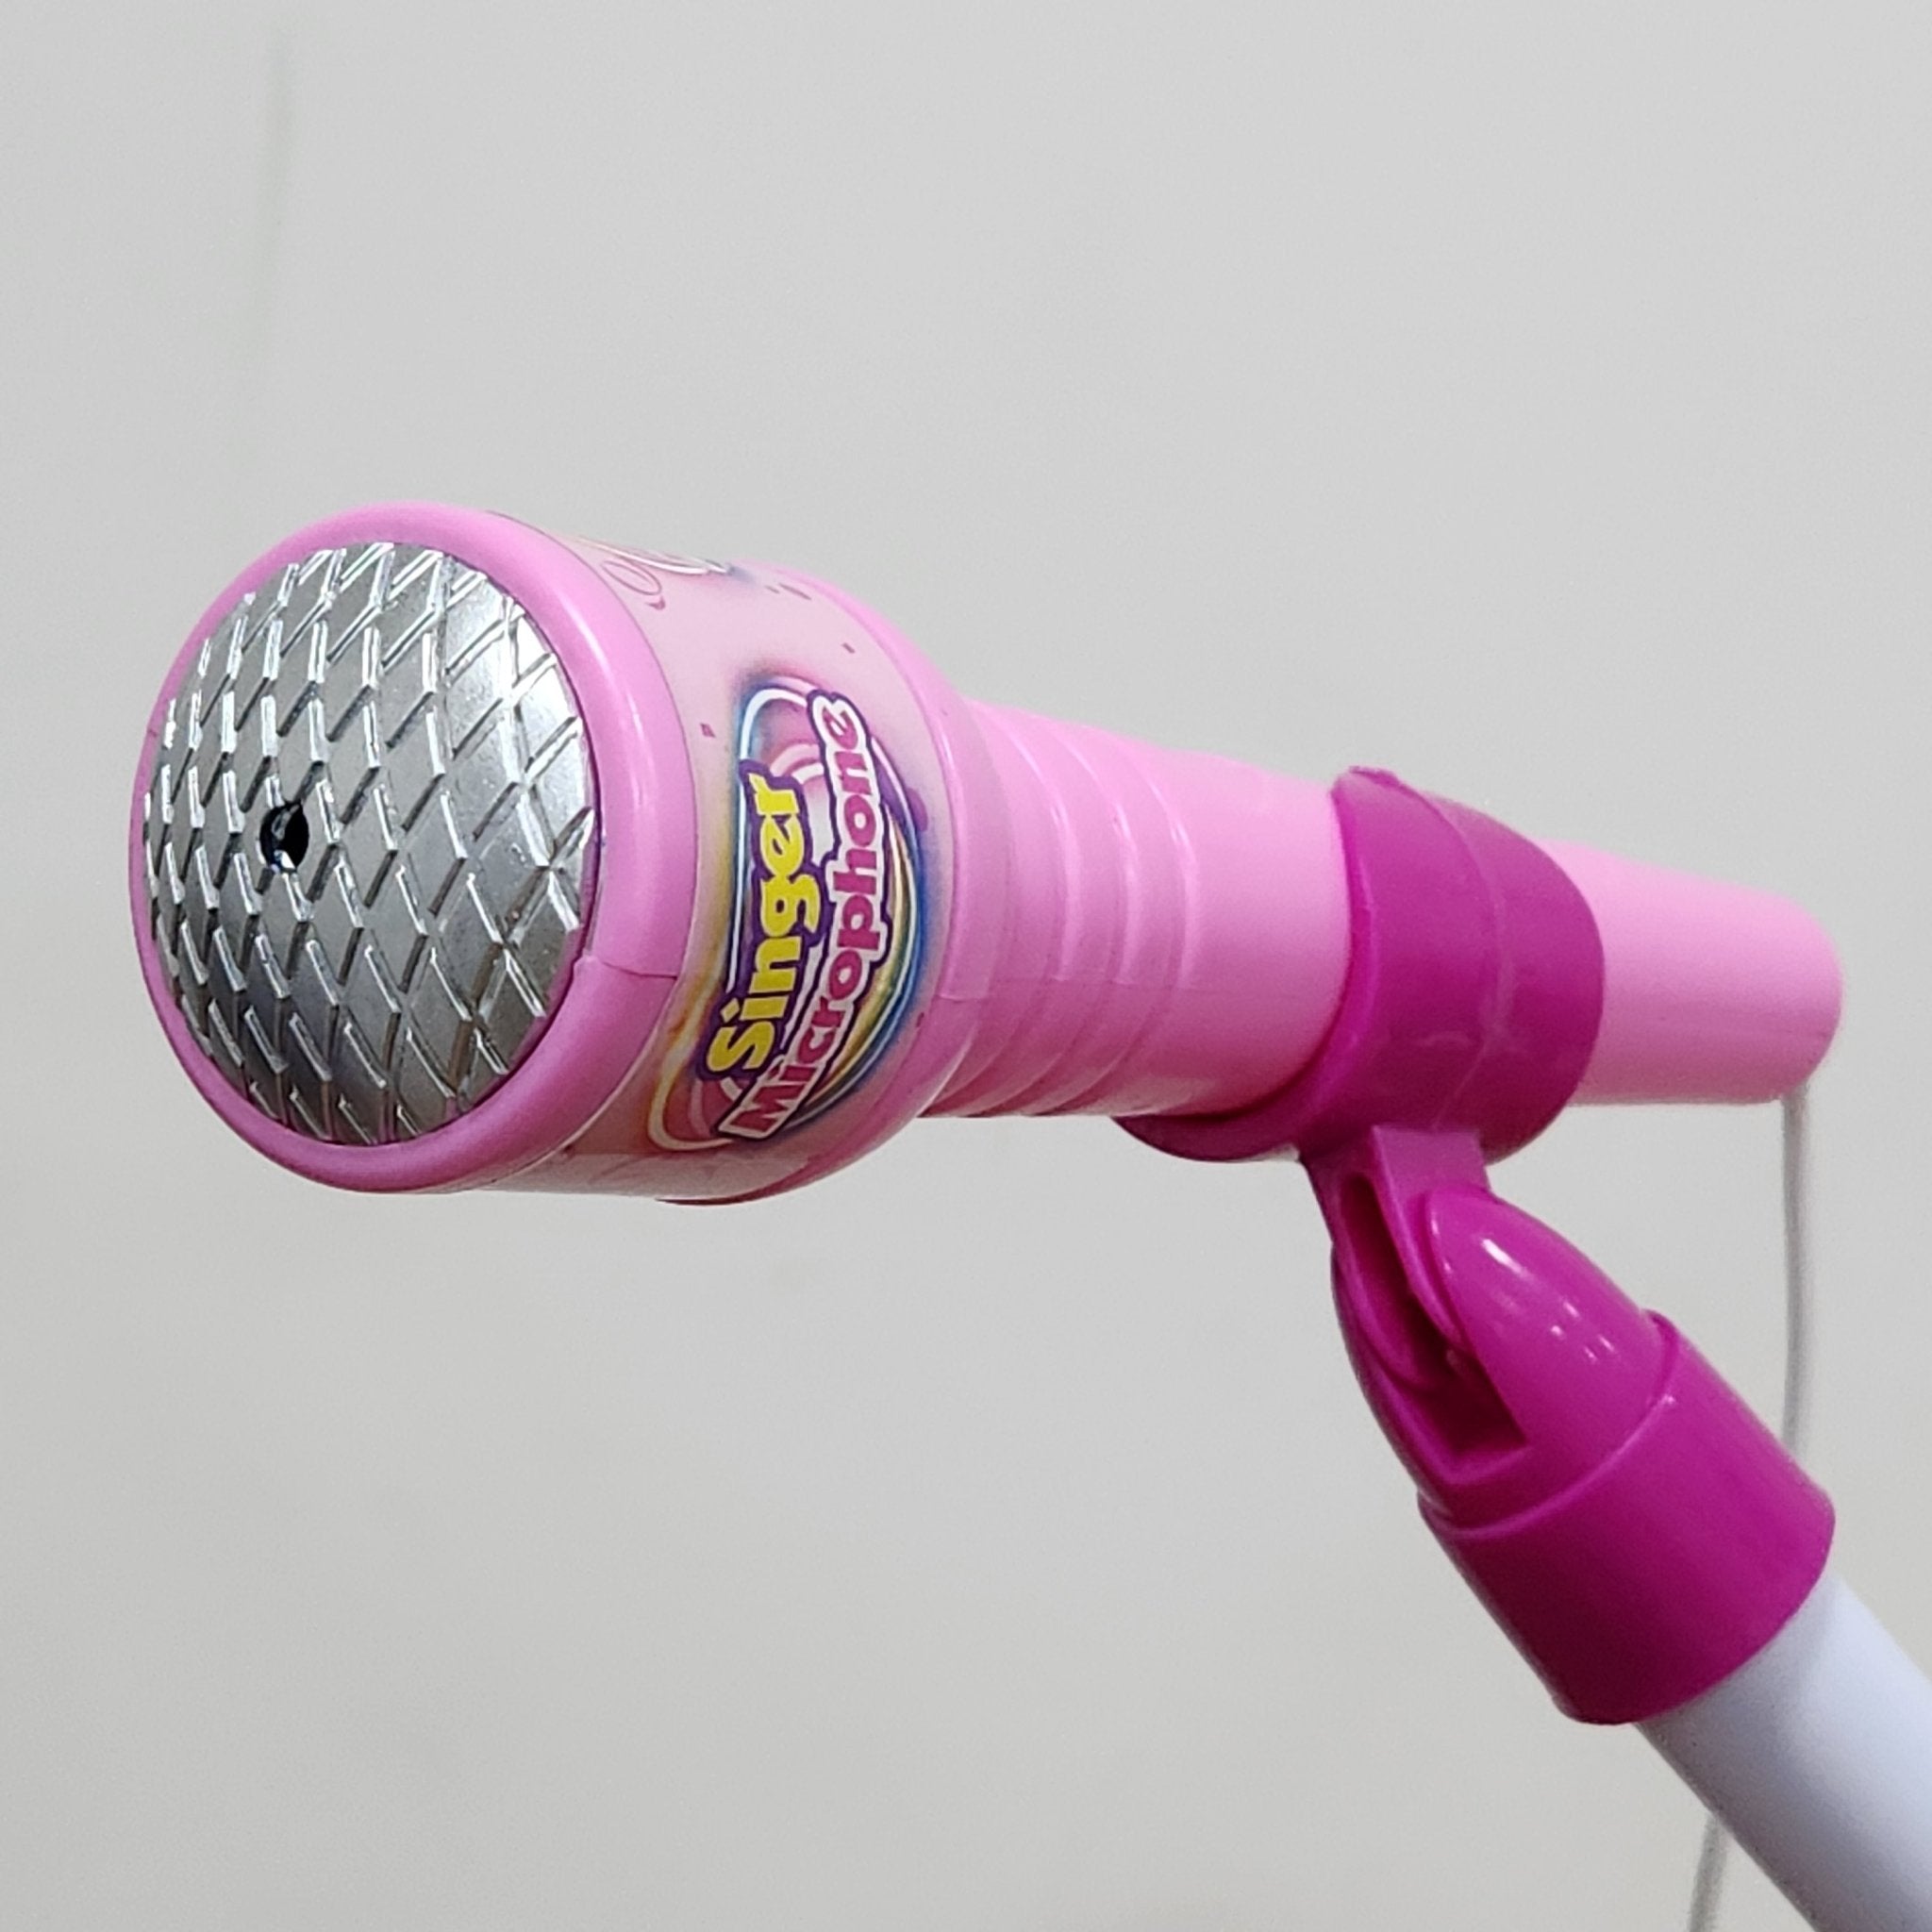 Microfone Duplo Infantil com Pedestal - Brinquedos VDH02804-02